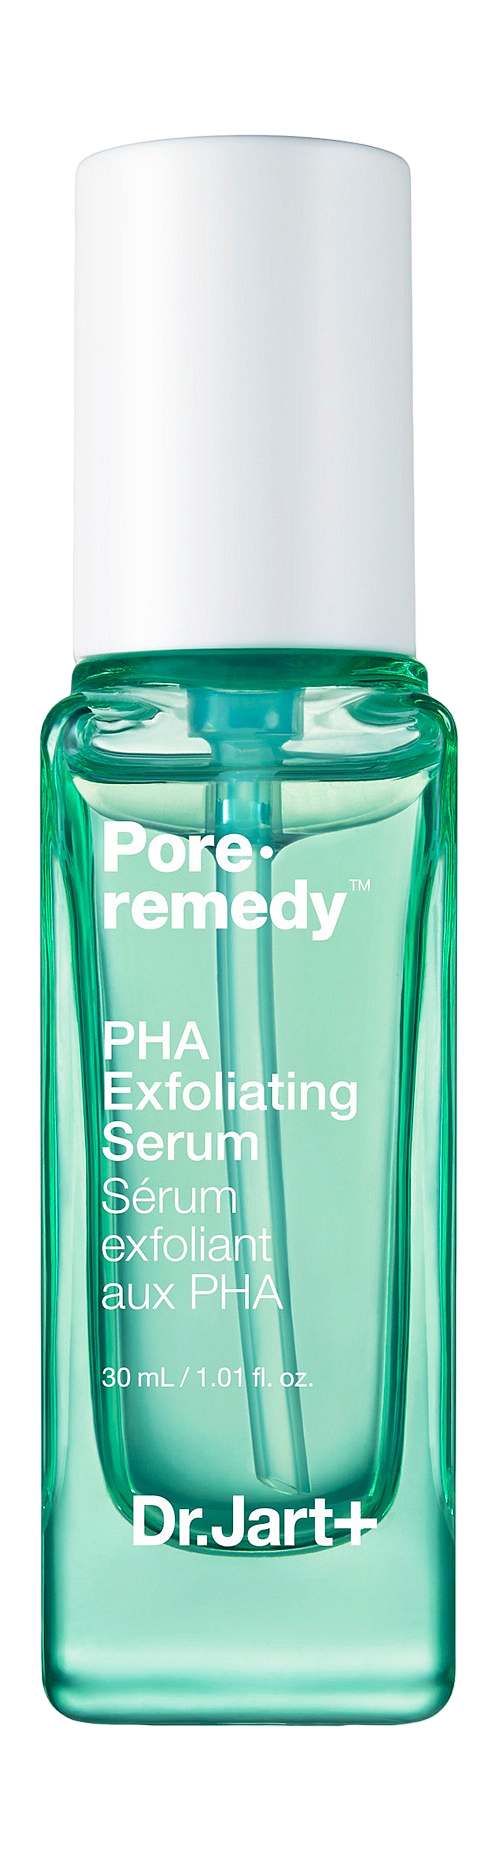 Сыворотка для лица обновляющая с PHA-кислотами Pore·remedy PHA Exfoliating Serum